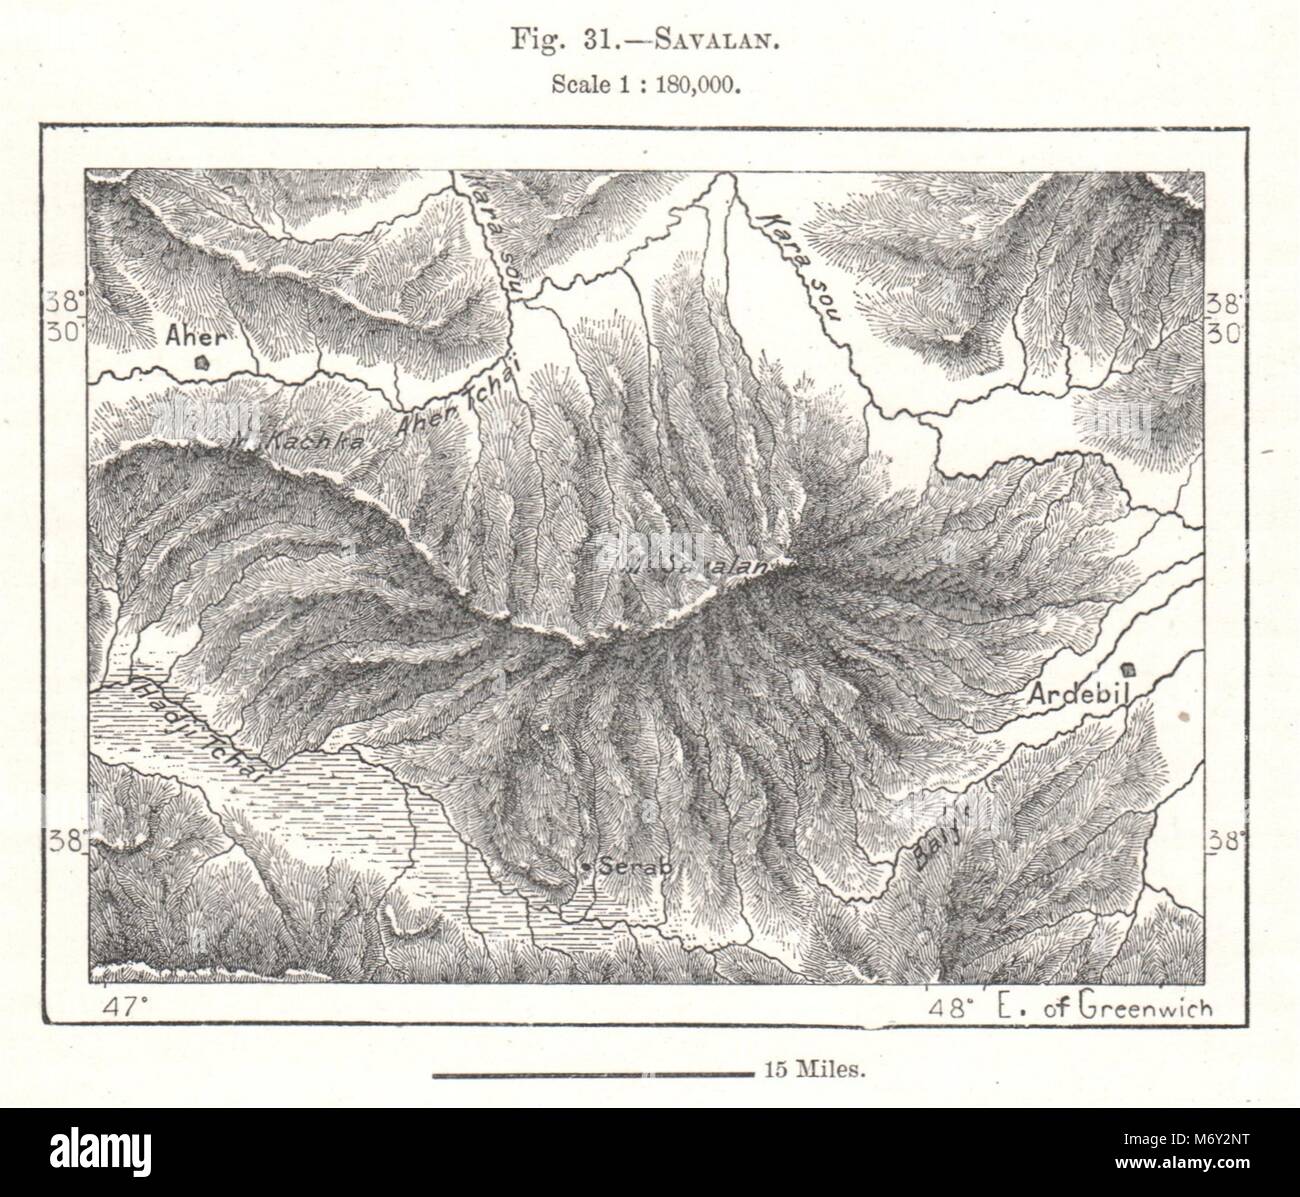 Mount Sabalan. Iran. Sketch map 1885 old antique vintage plan chart Stock Photo